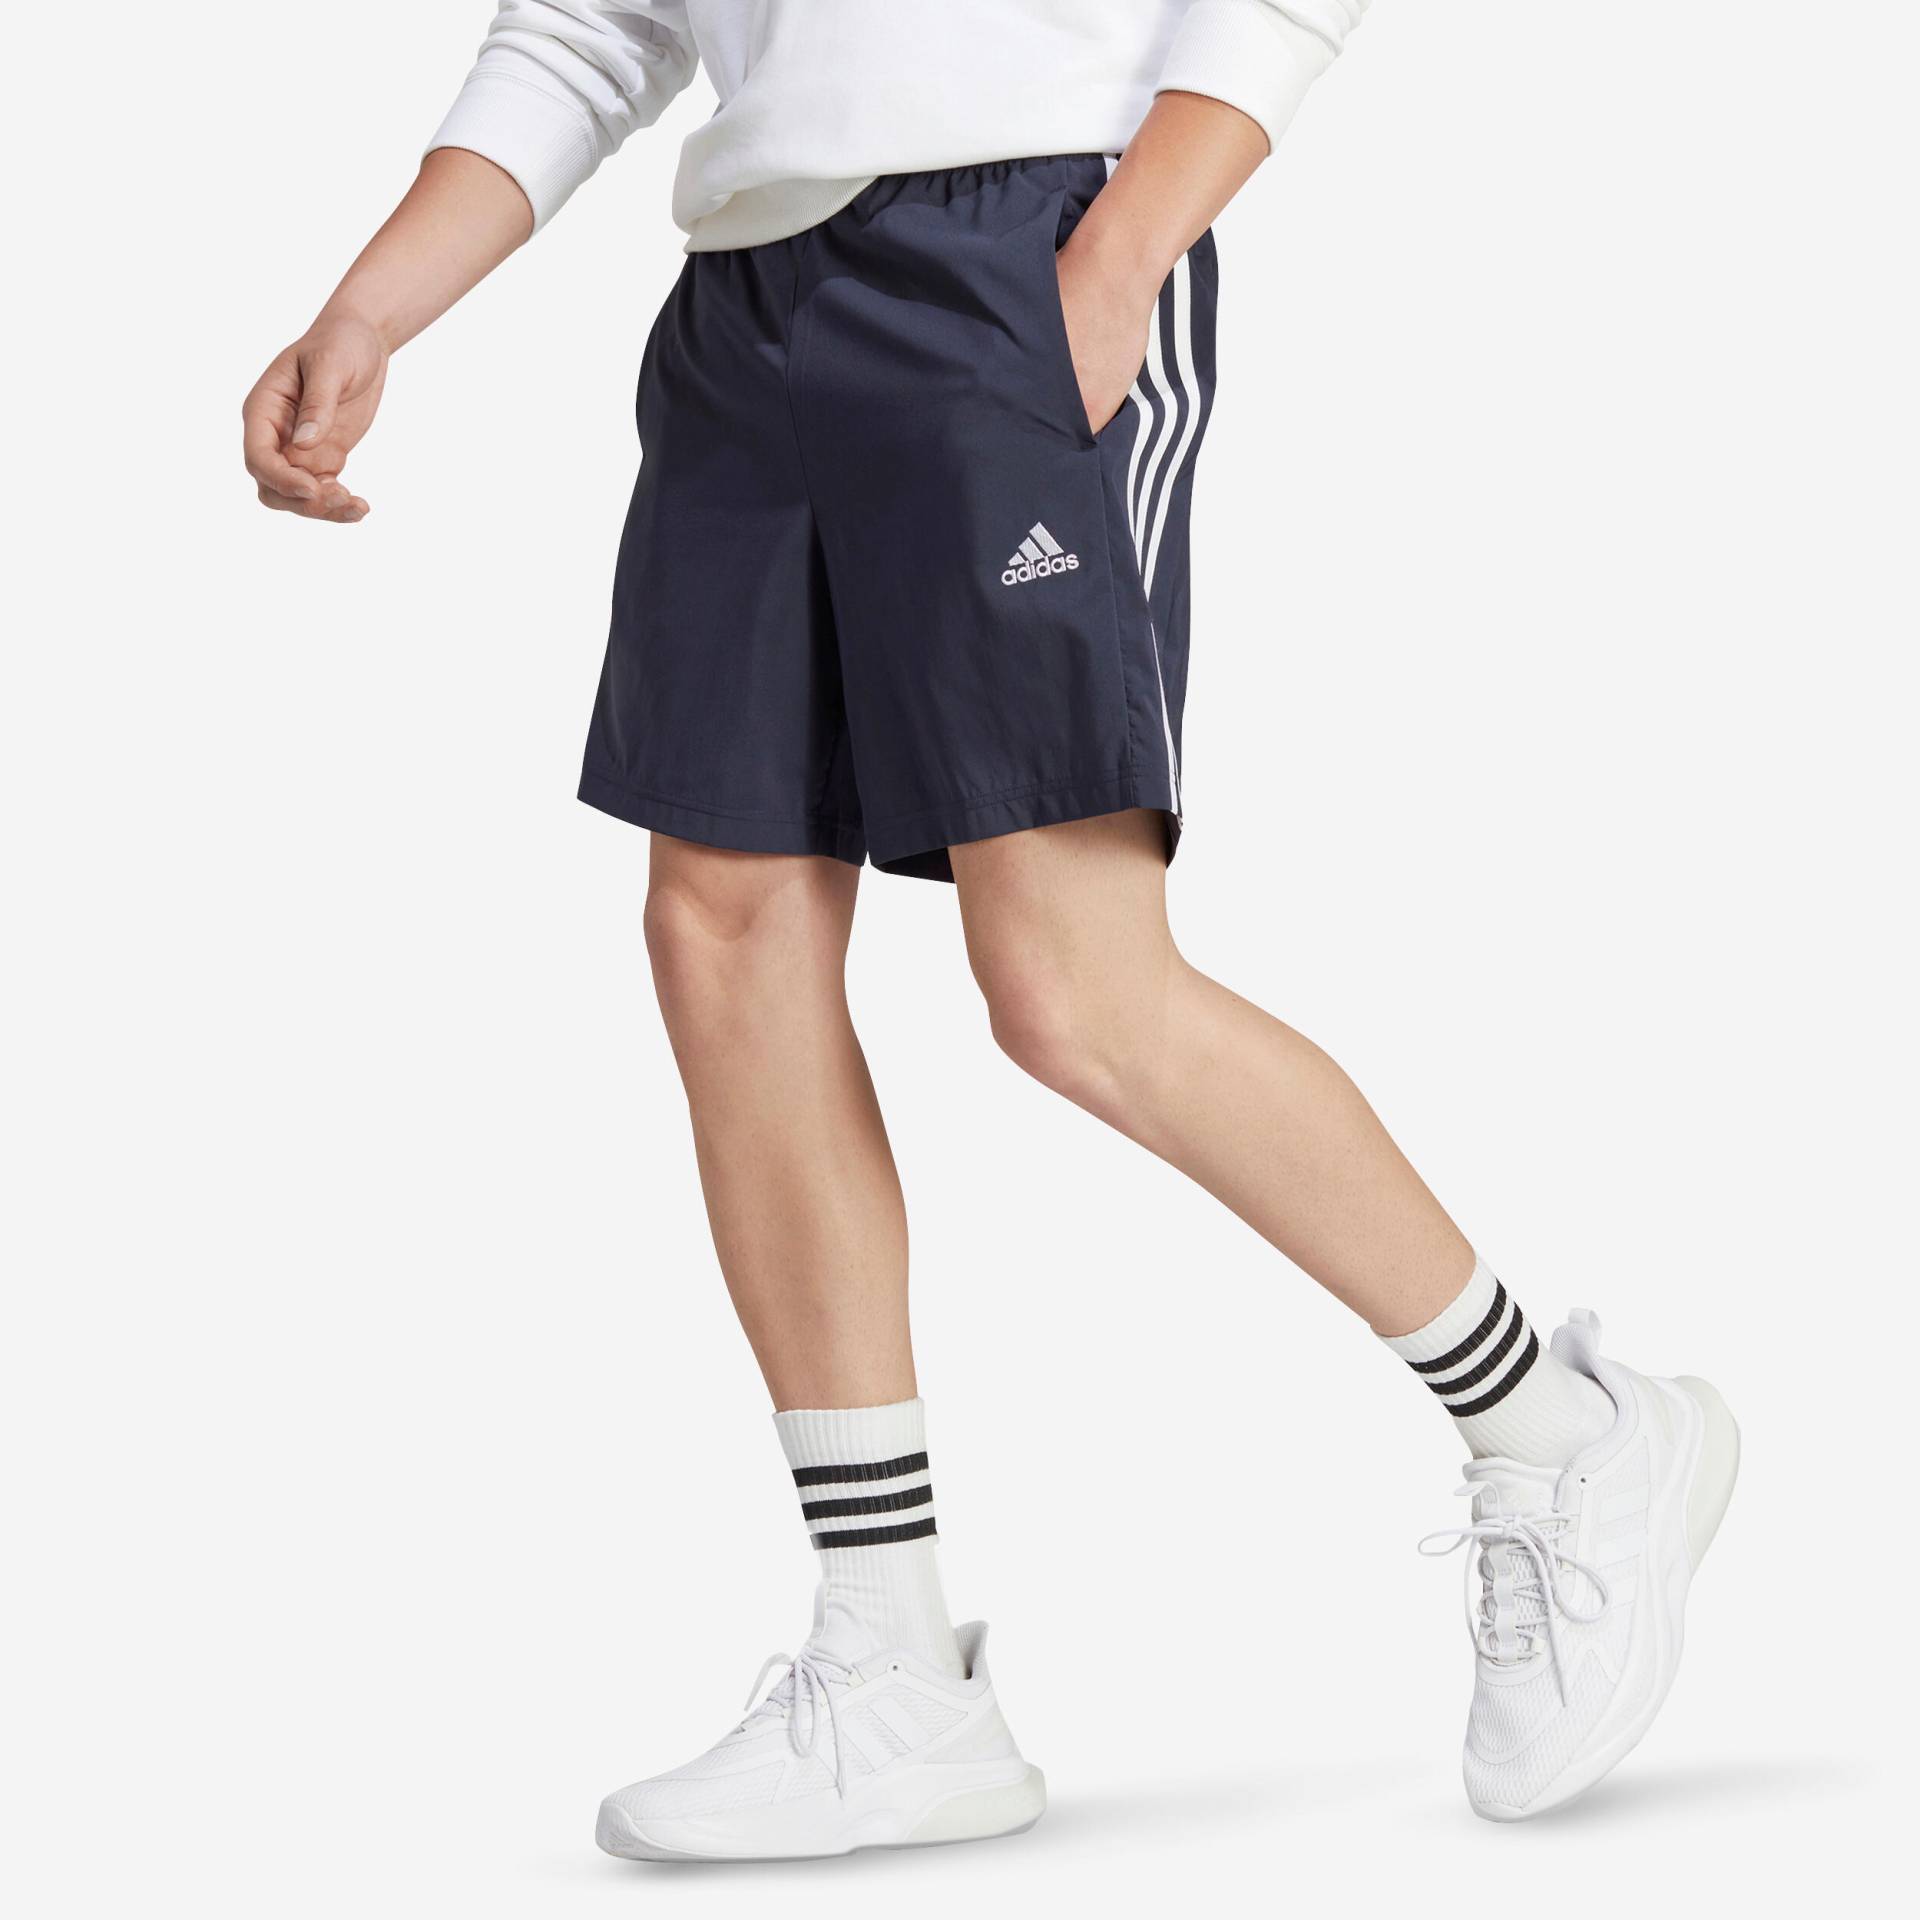 ADIDAS Shorts Herren - blau von Adidas